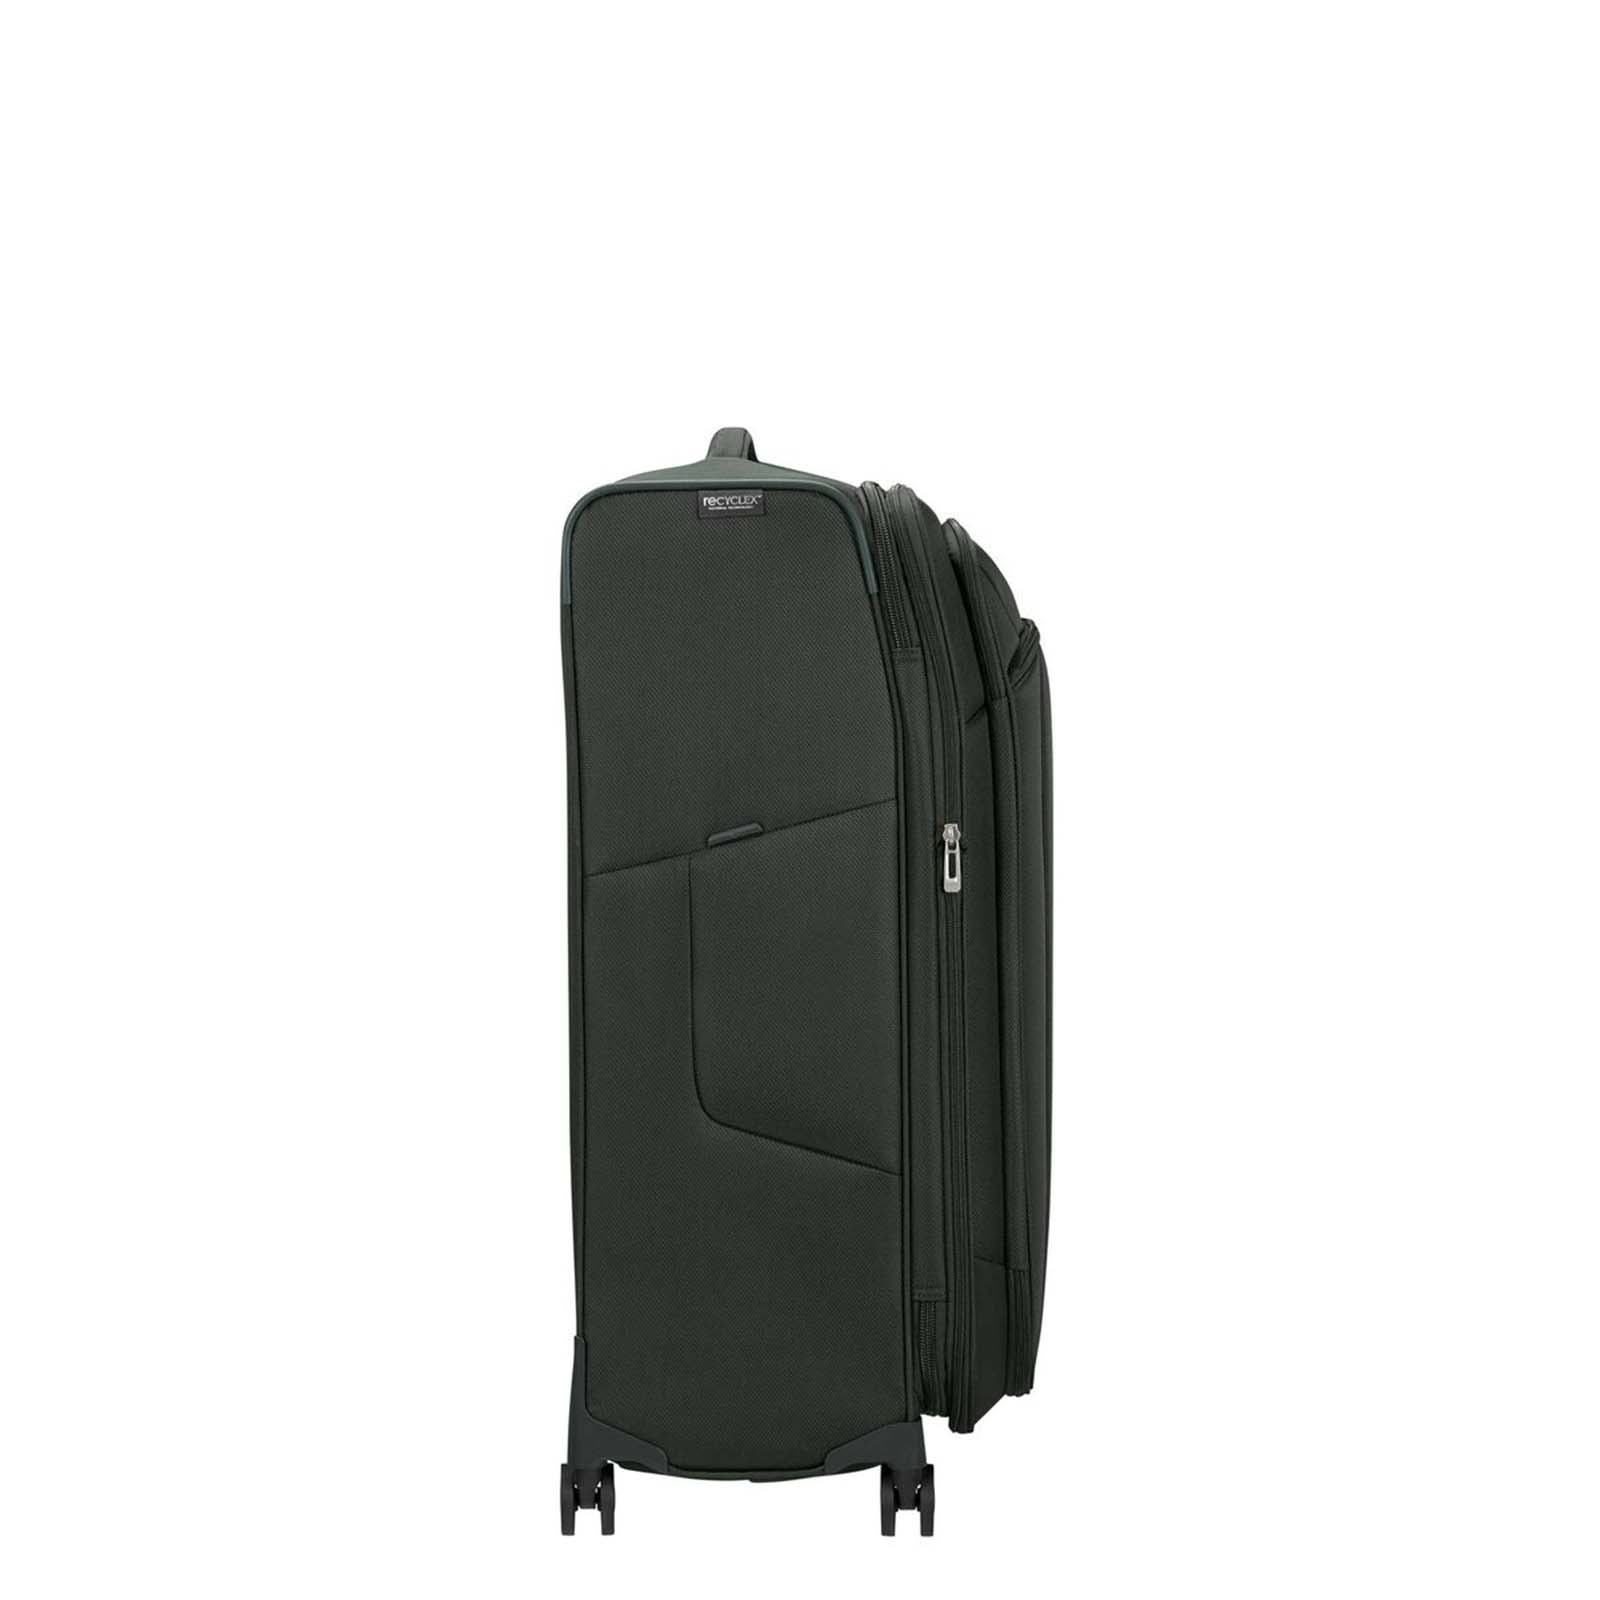 Samsonite-Respark-78cm-Suitcase-Forest-Green-Side